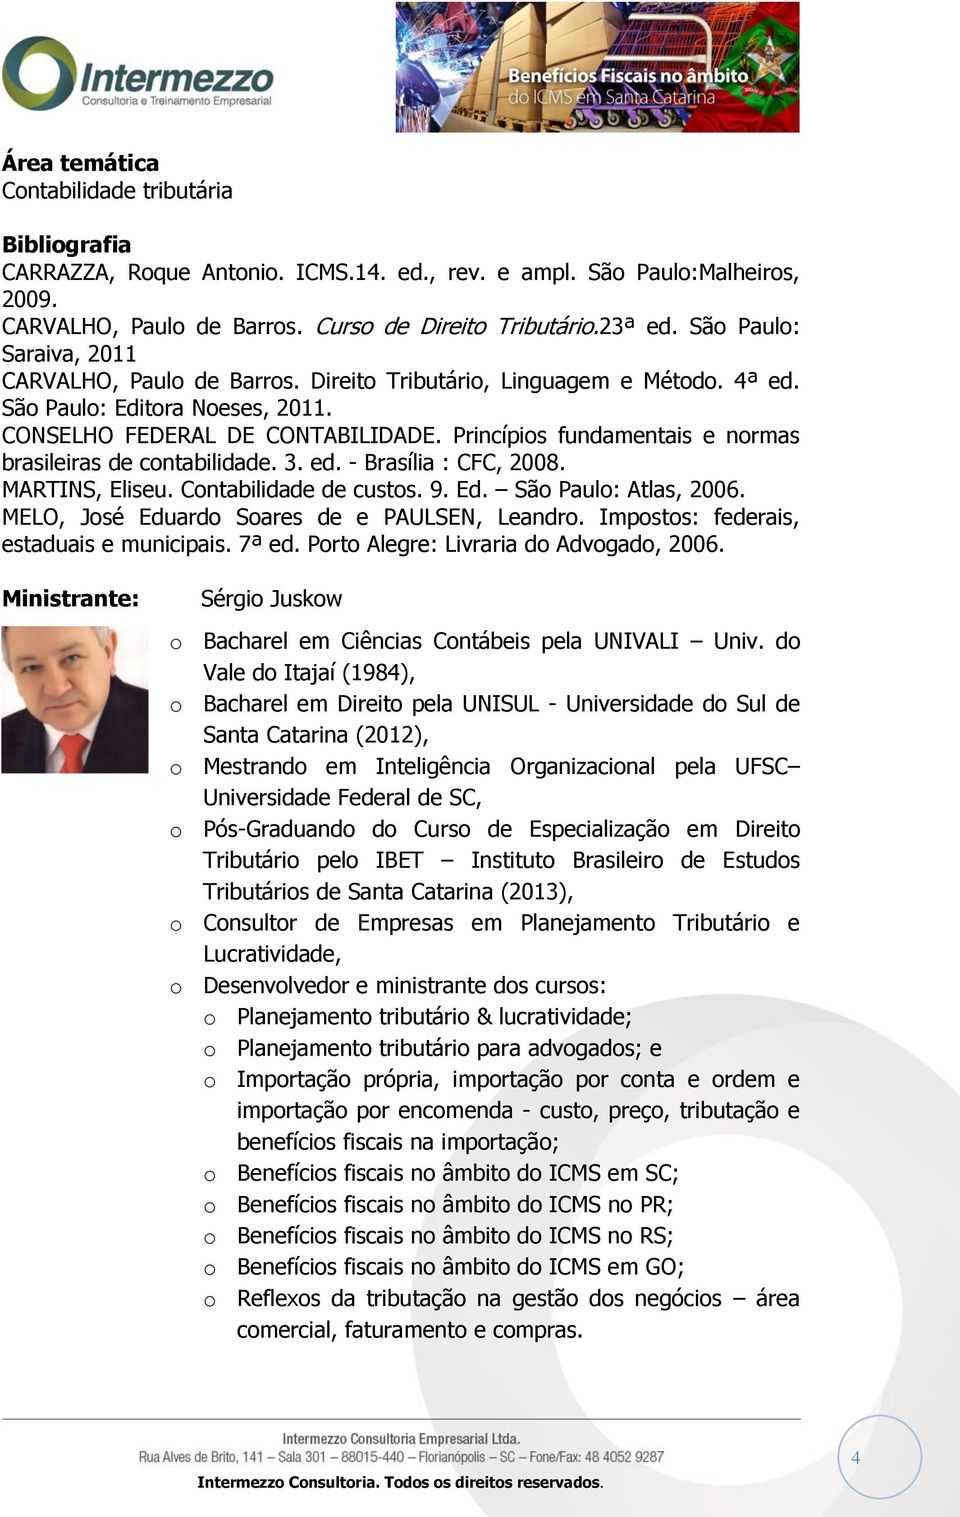 Princípios fundamentais e normas brasileiras de contabilidade. 3. ed. - Brasília : CFC, 2008. MARTINS, Eliseu. Contabilidade de custos. 9. Ed. São Paulo: Atlas, 2006.